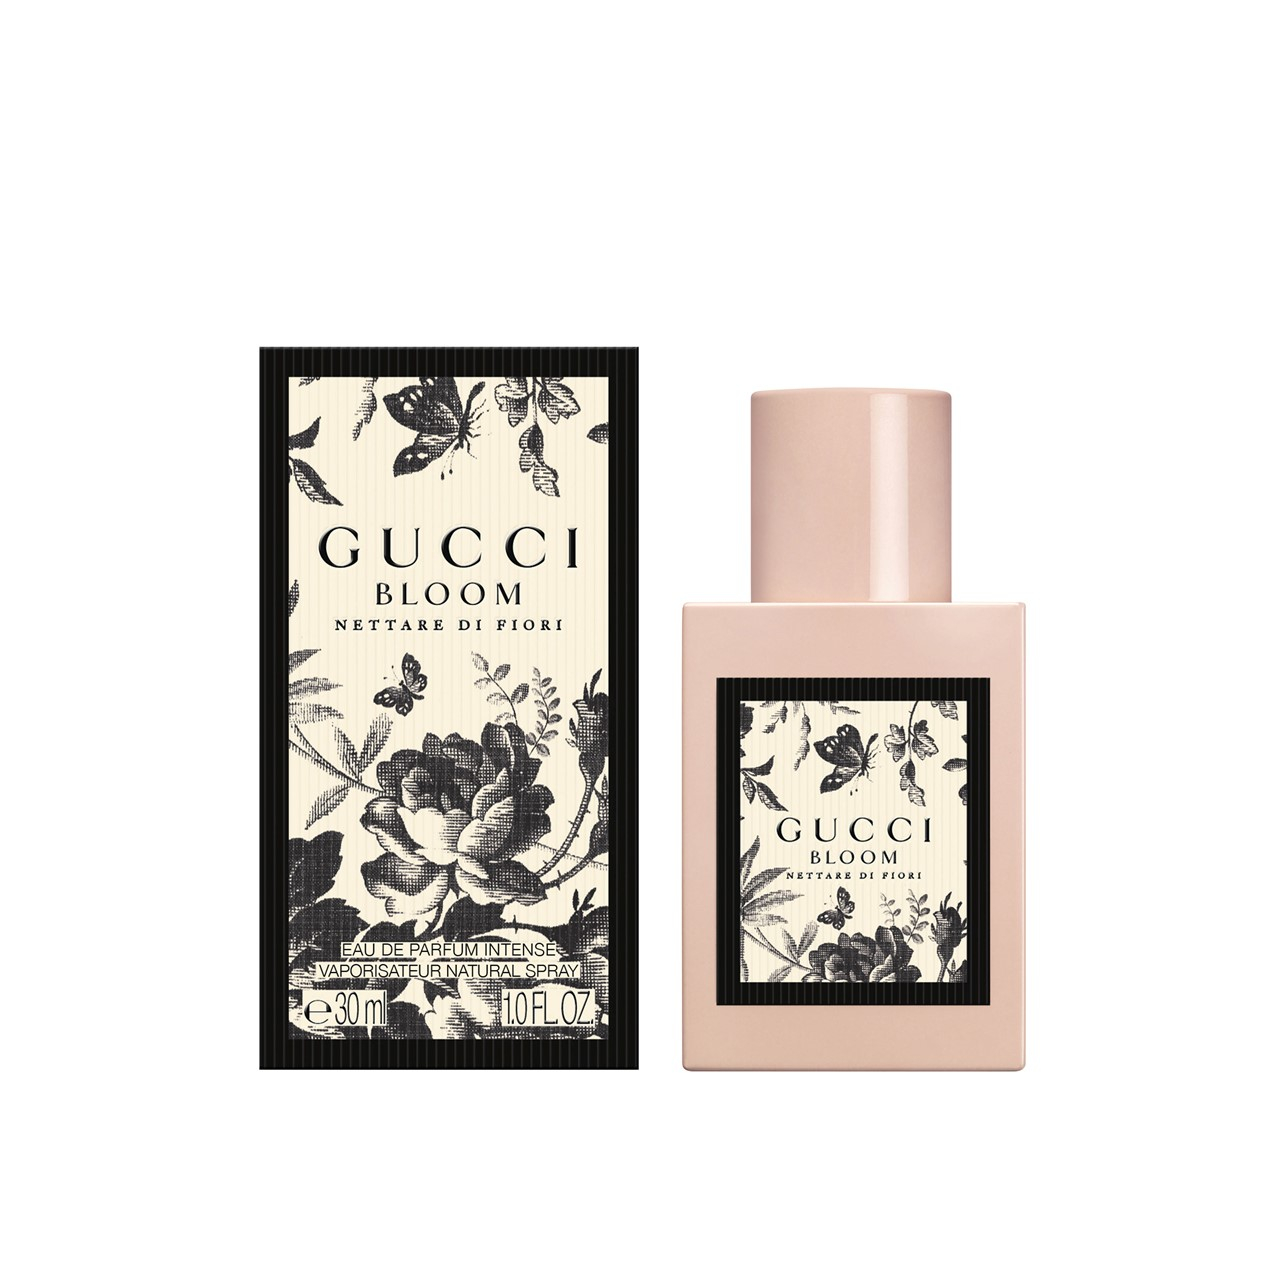 Gucci Bloom Nettare Di Fiori Eau de Parfum Intense 30ml (1.0fl oz)